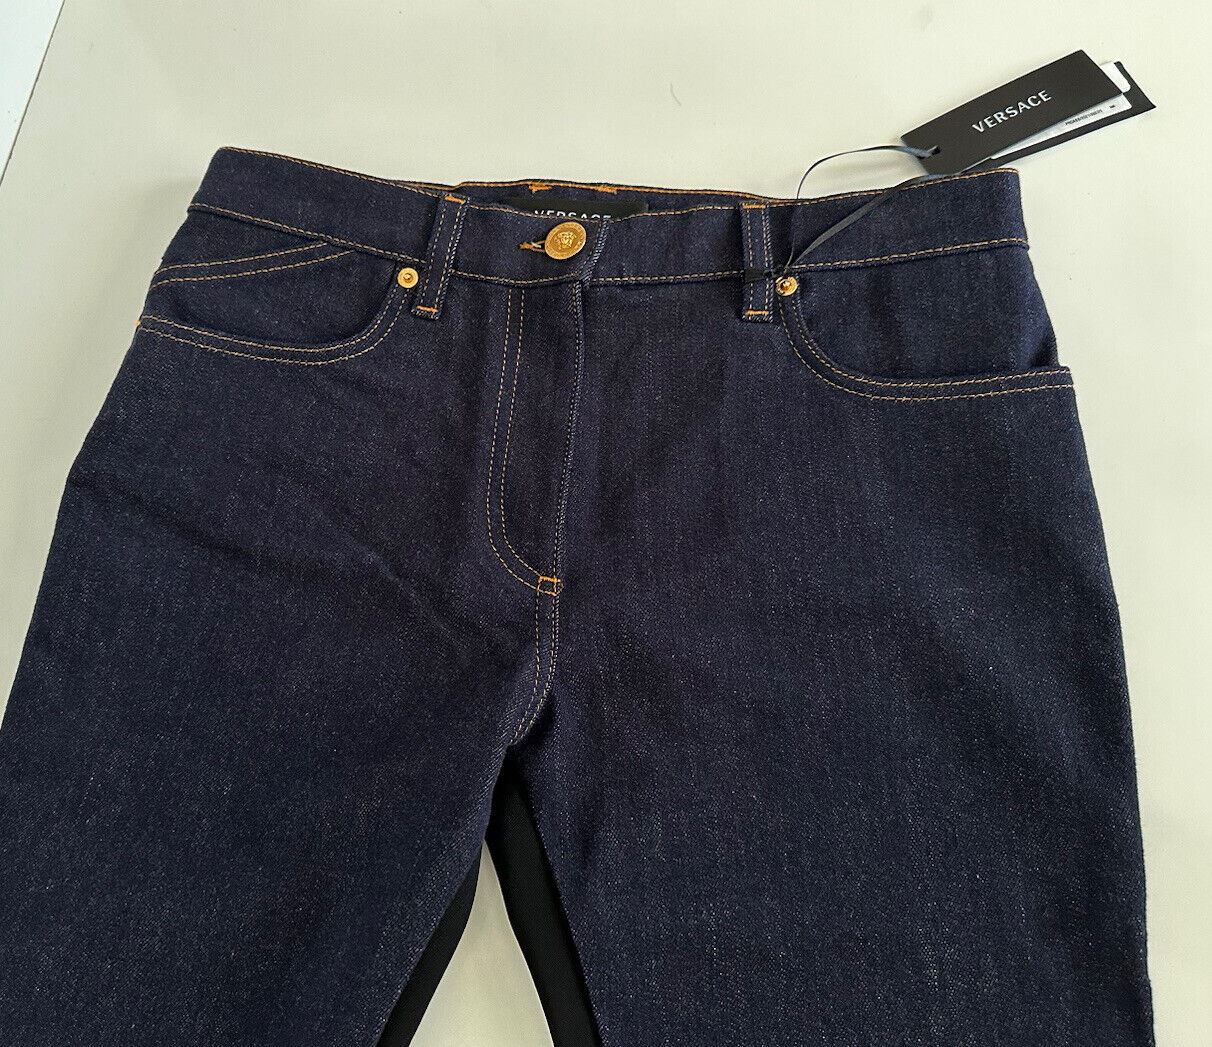 Neu mit Etikett: 925 $ Versace Damen-Jeans in Denimblau, Größe 27 US 1003998, hergestellt in Italien